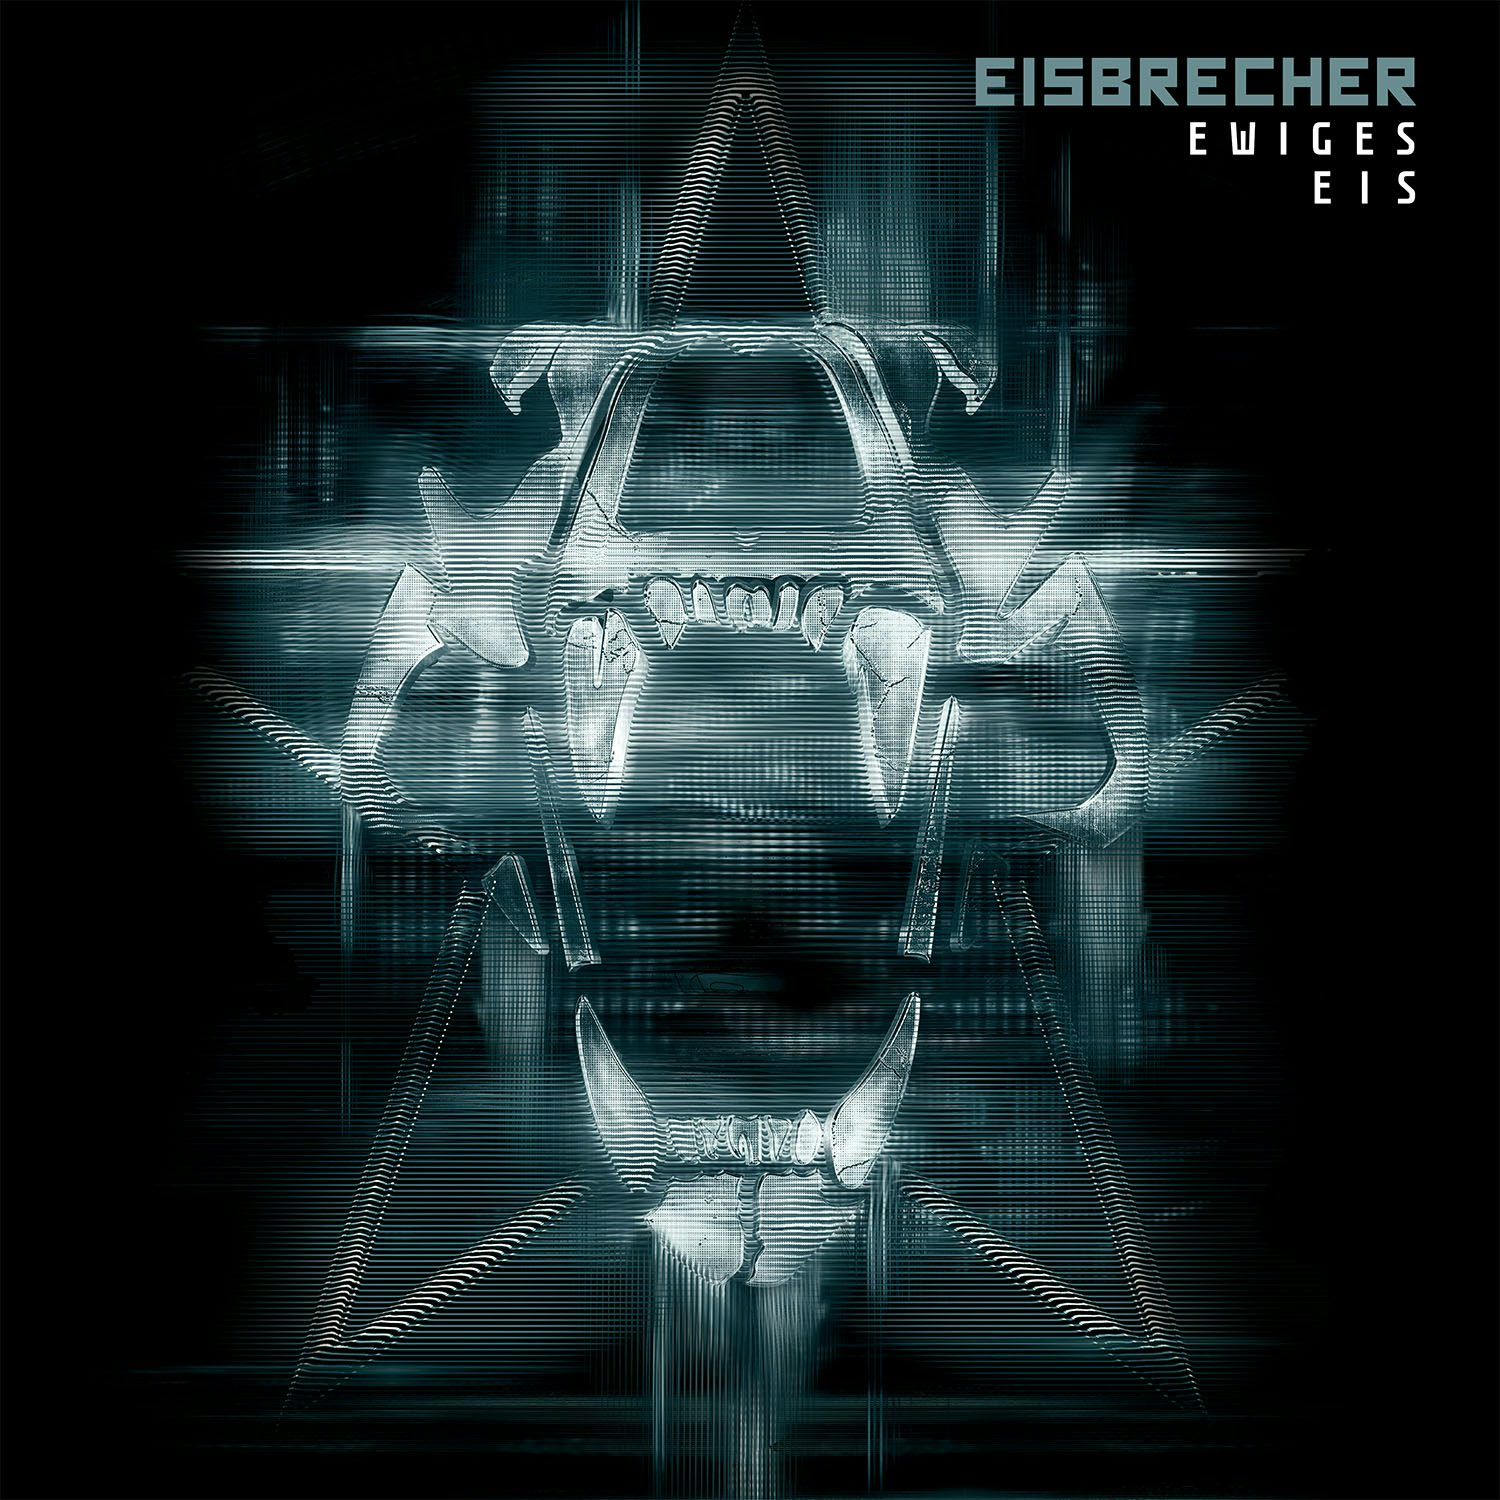 Eisbrecher rot wie. Группа Eisbrecher. Eisbrecher фото обложек. Солист группы Eisbrecher. Eisbrecher обложки альбомов.